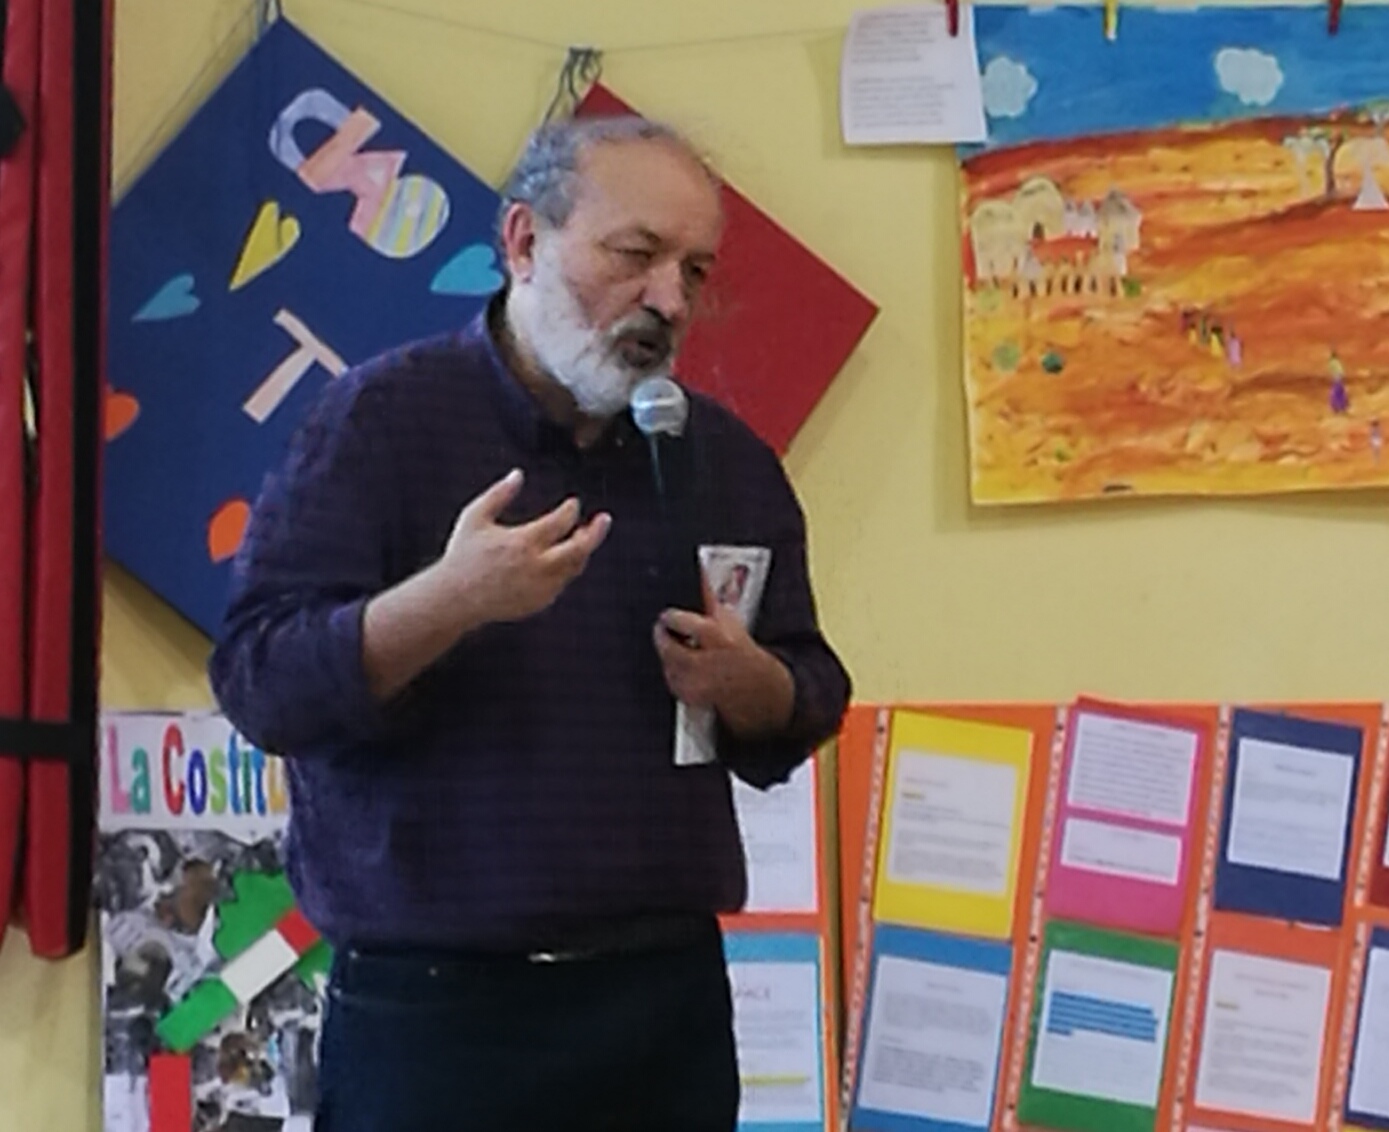 Poesie Di Natale Roberto Piumini.Alla Scuola Primaria Di Rivalta I Bambini Incontrano Roberto Piumini